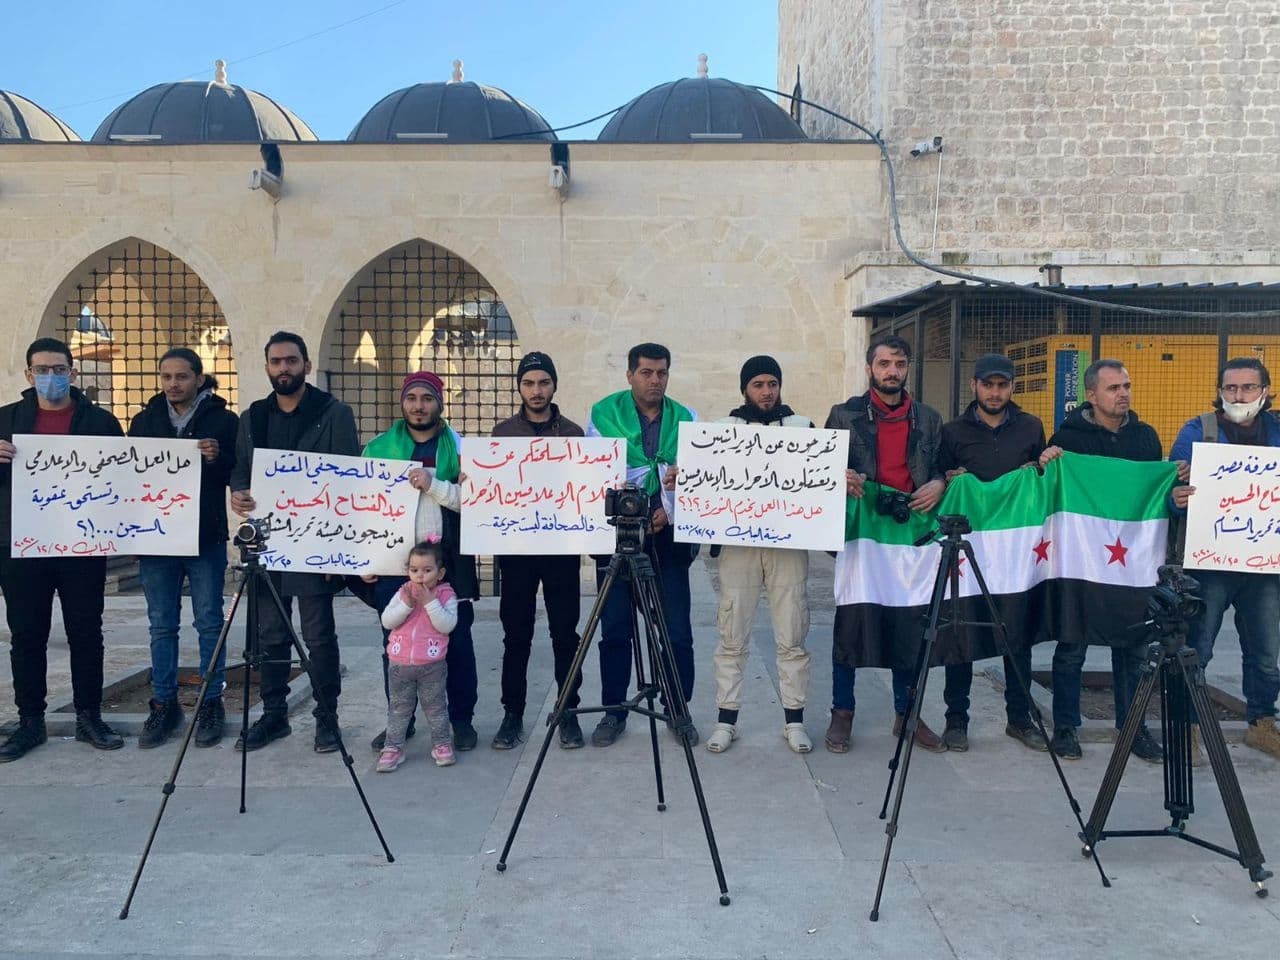 وقفة احتجاجية لنشطاء مدينة الباب بريف حلب تطالب هيئة تحرير الشام للكشف عن مصير الإعلامي.jpg